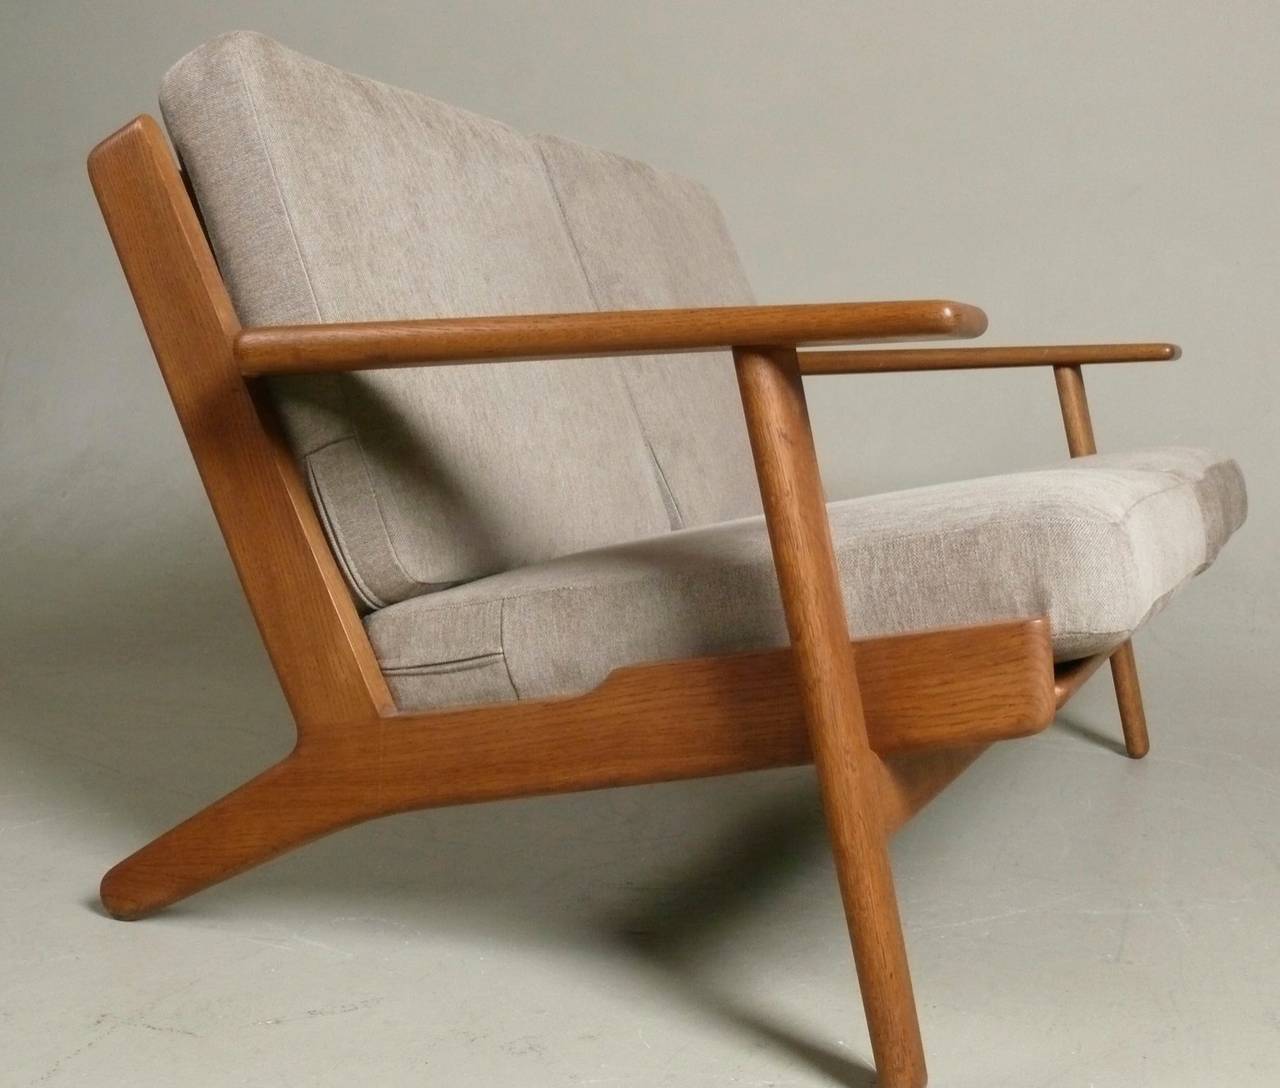 20th Century 1950s Oak Frame Settee designed by Hans Wegner for Getama, Denmark